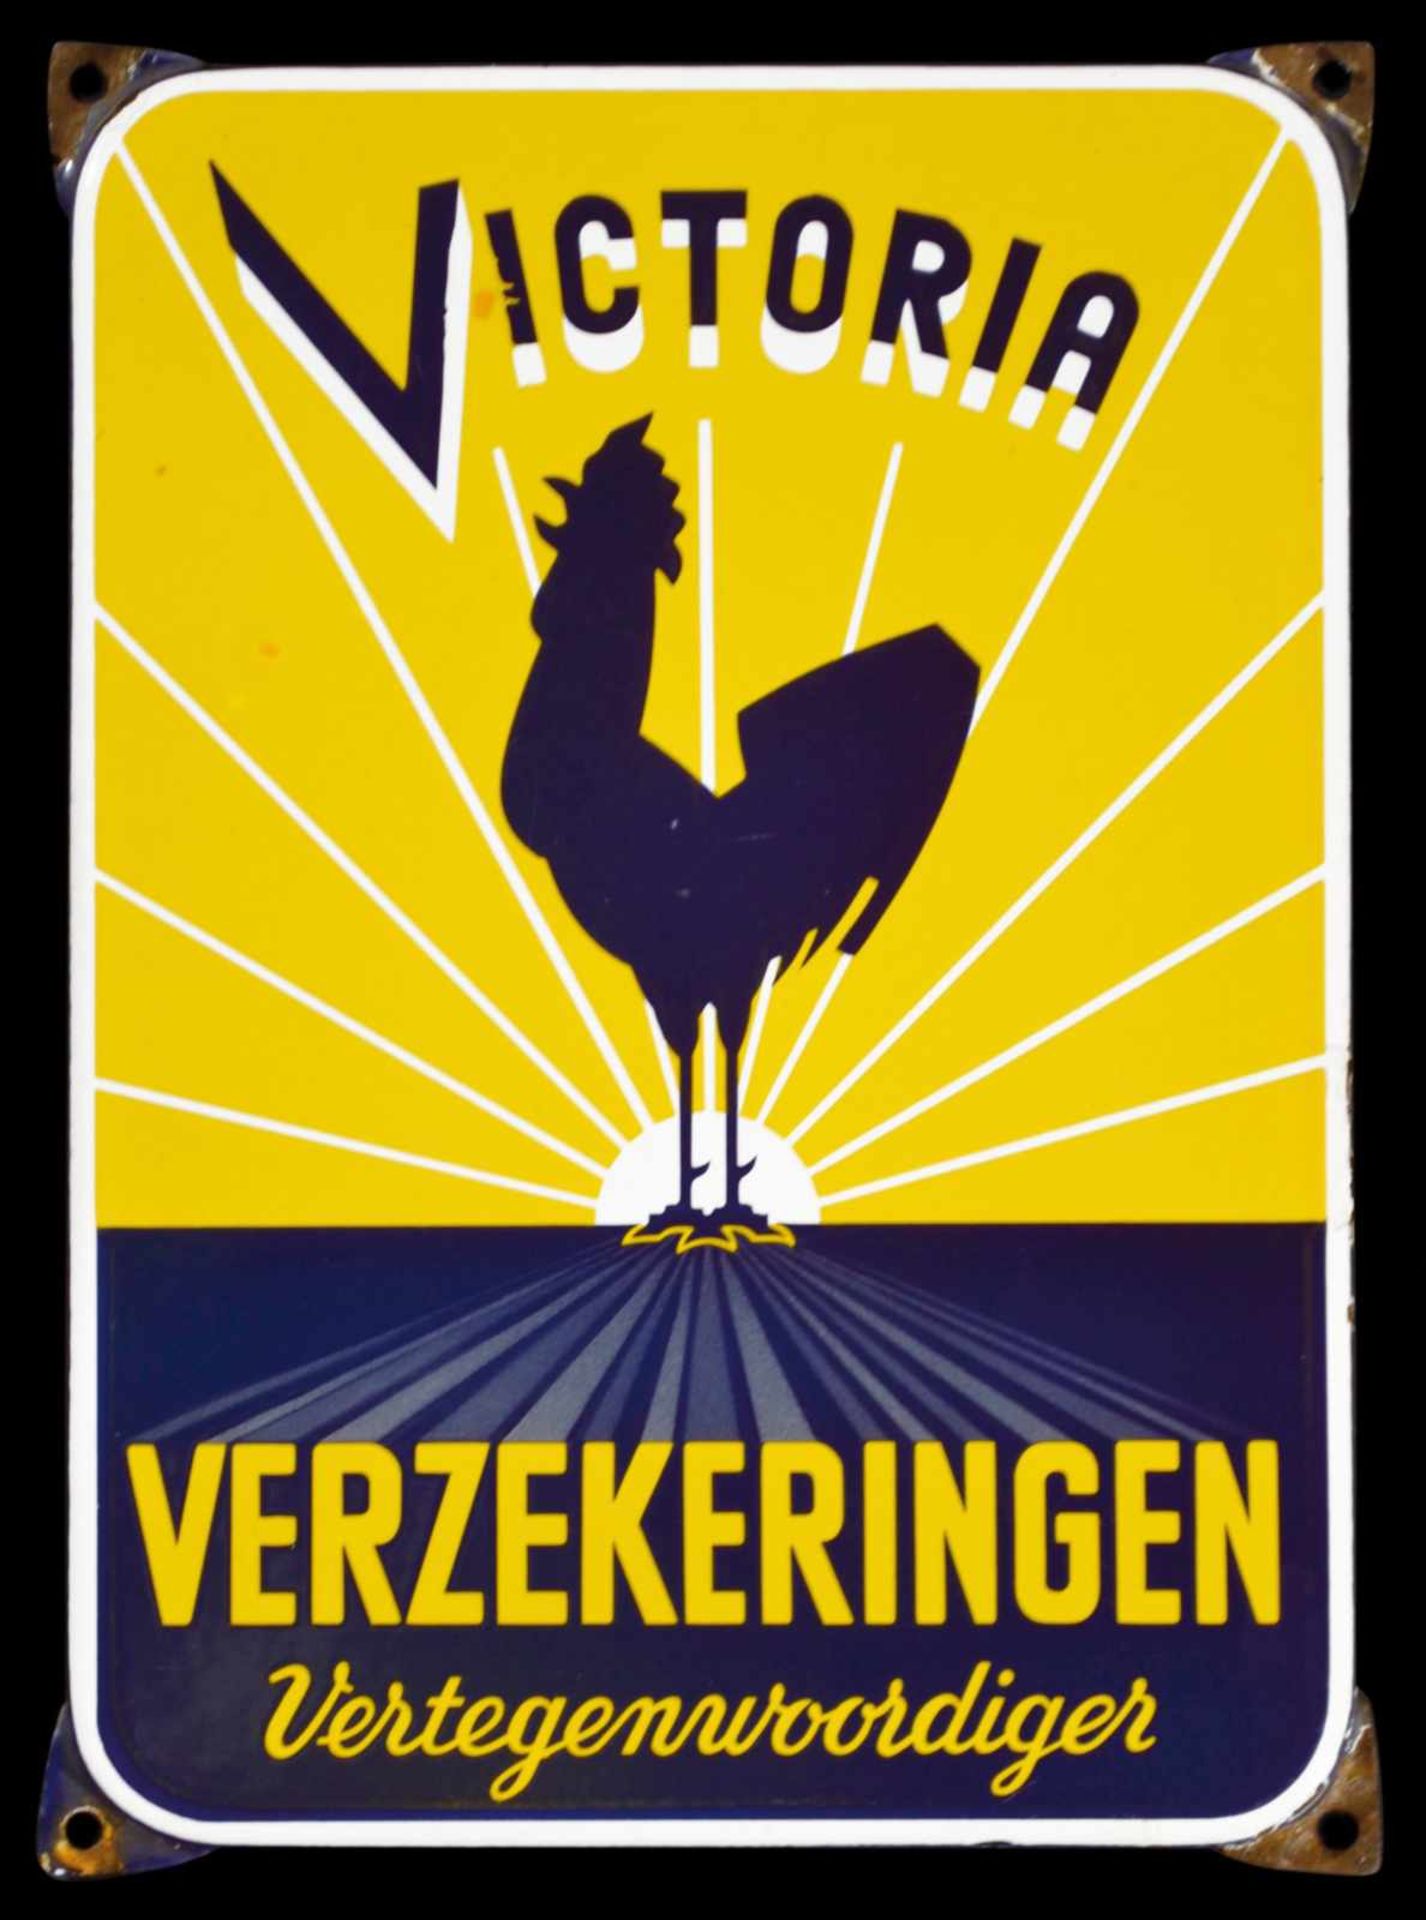 VICTORIA VERZEKERINGEN (1) Emailschild, abgekantet, schabloniert und lithographiert, Niederlande